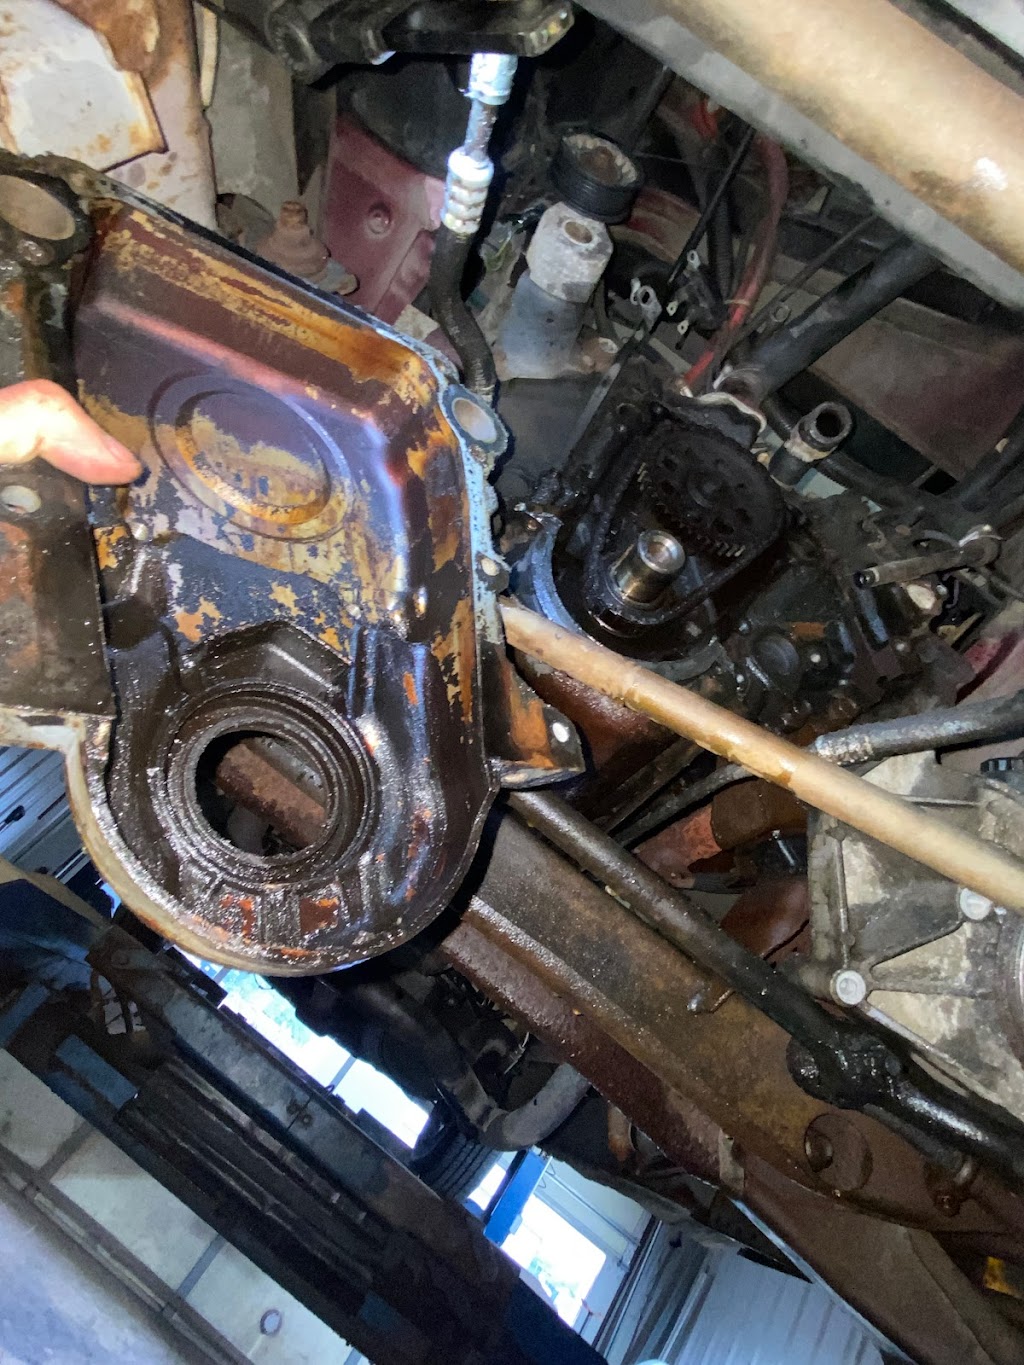 Cuce Auto Repair | 2111 Bethlehem Pike, Hatfield, PA 19440 | Phone: (215) 997-8896